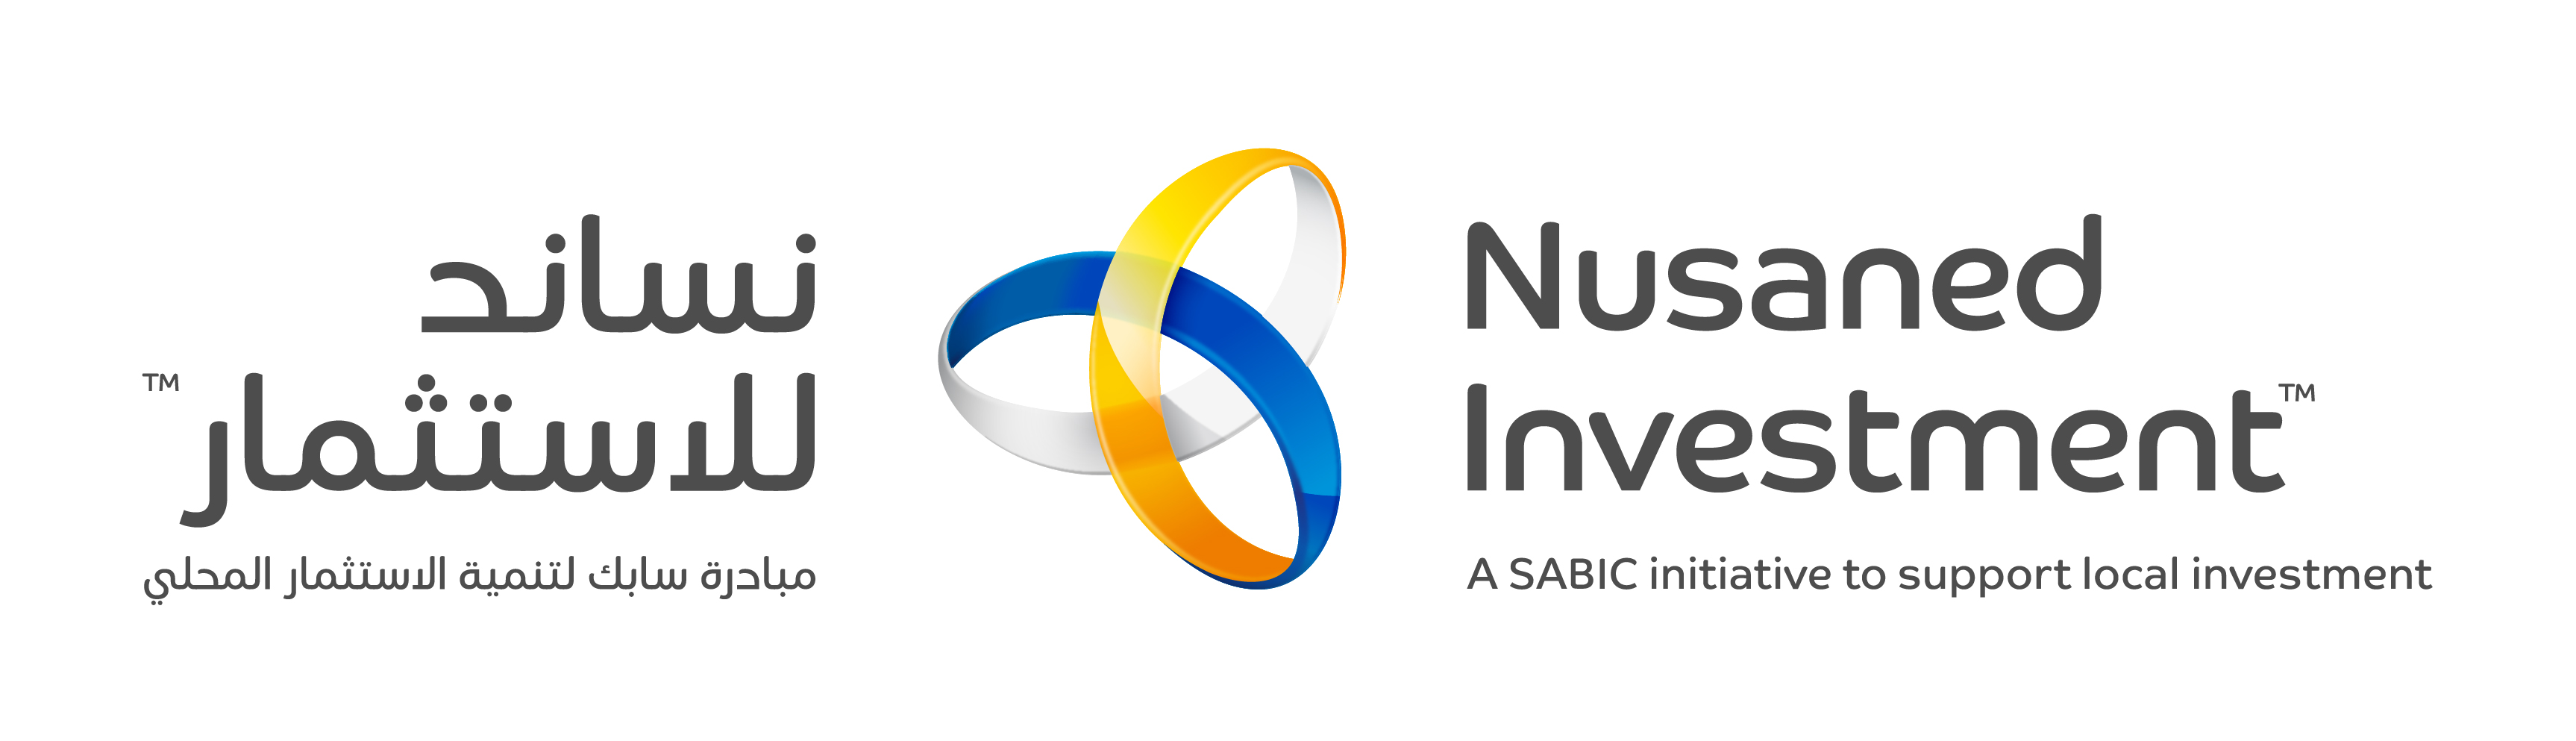 Nusaned Investment Wordmark - RGB - Jpeg - DUAL